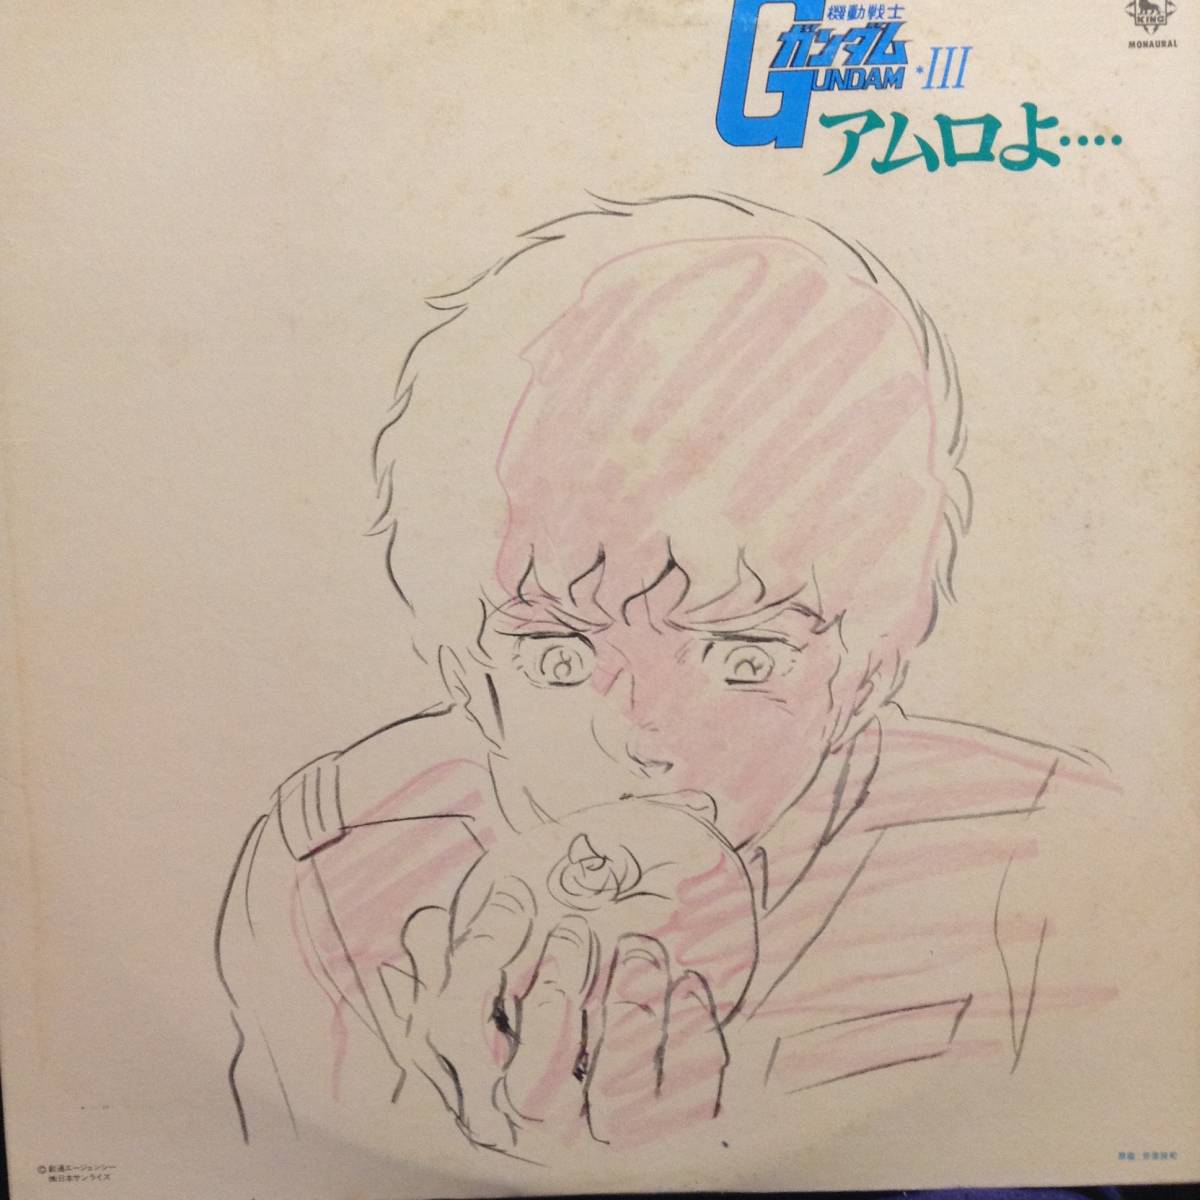  機動戦士ガンダムIII「アムロよ・・・・」／オリジナル・サウンドトラック　(LPレコード)　未収録BMG４曲入り、２枚組_画像1